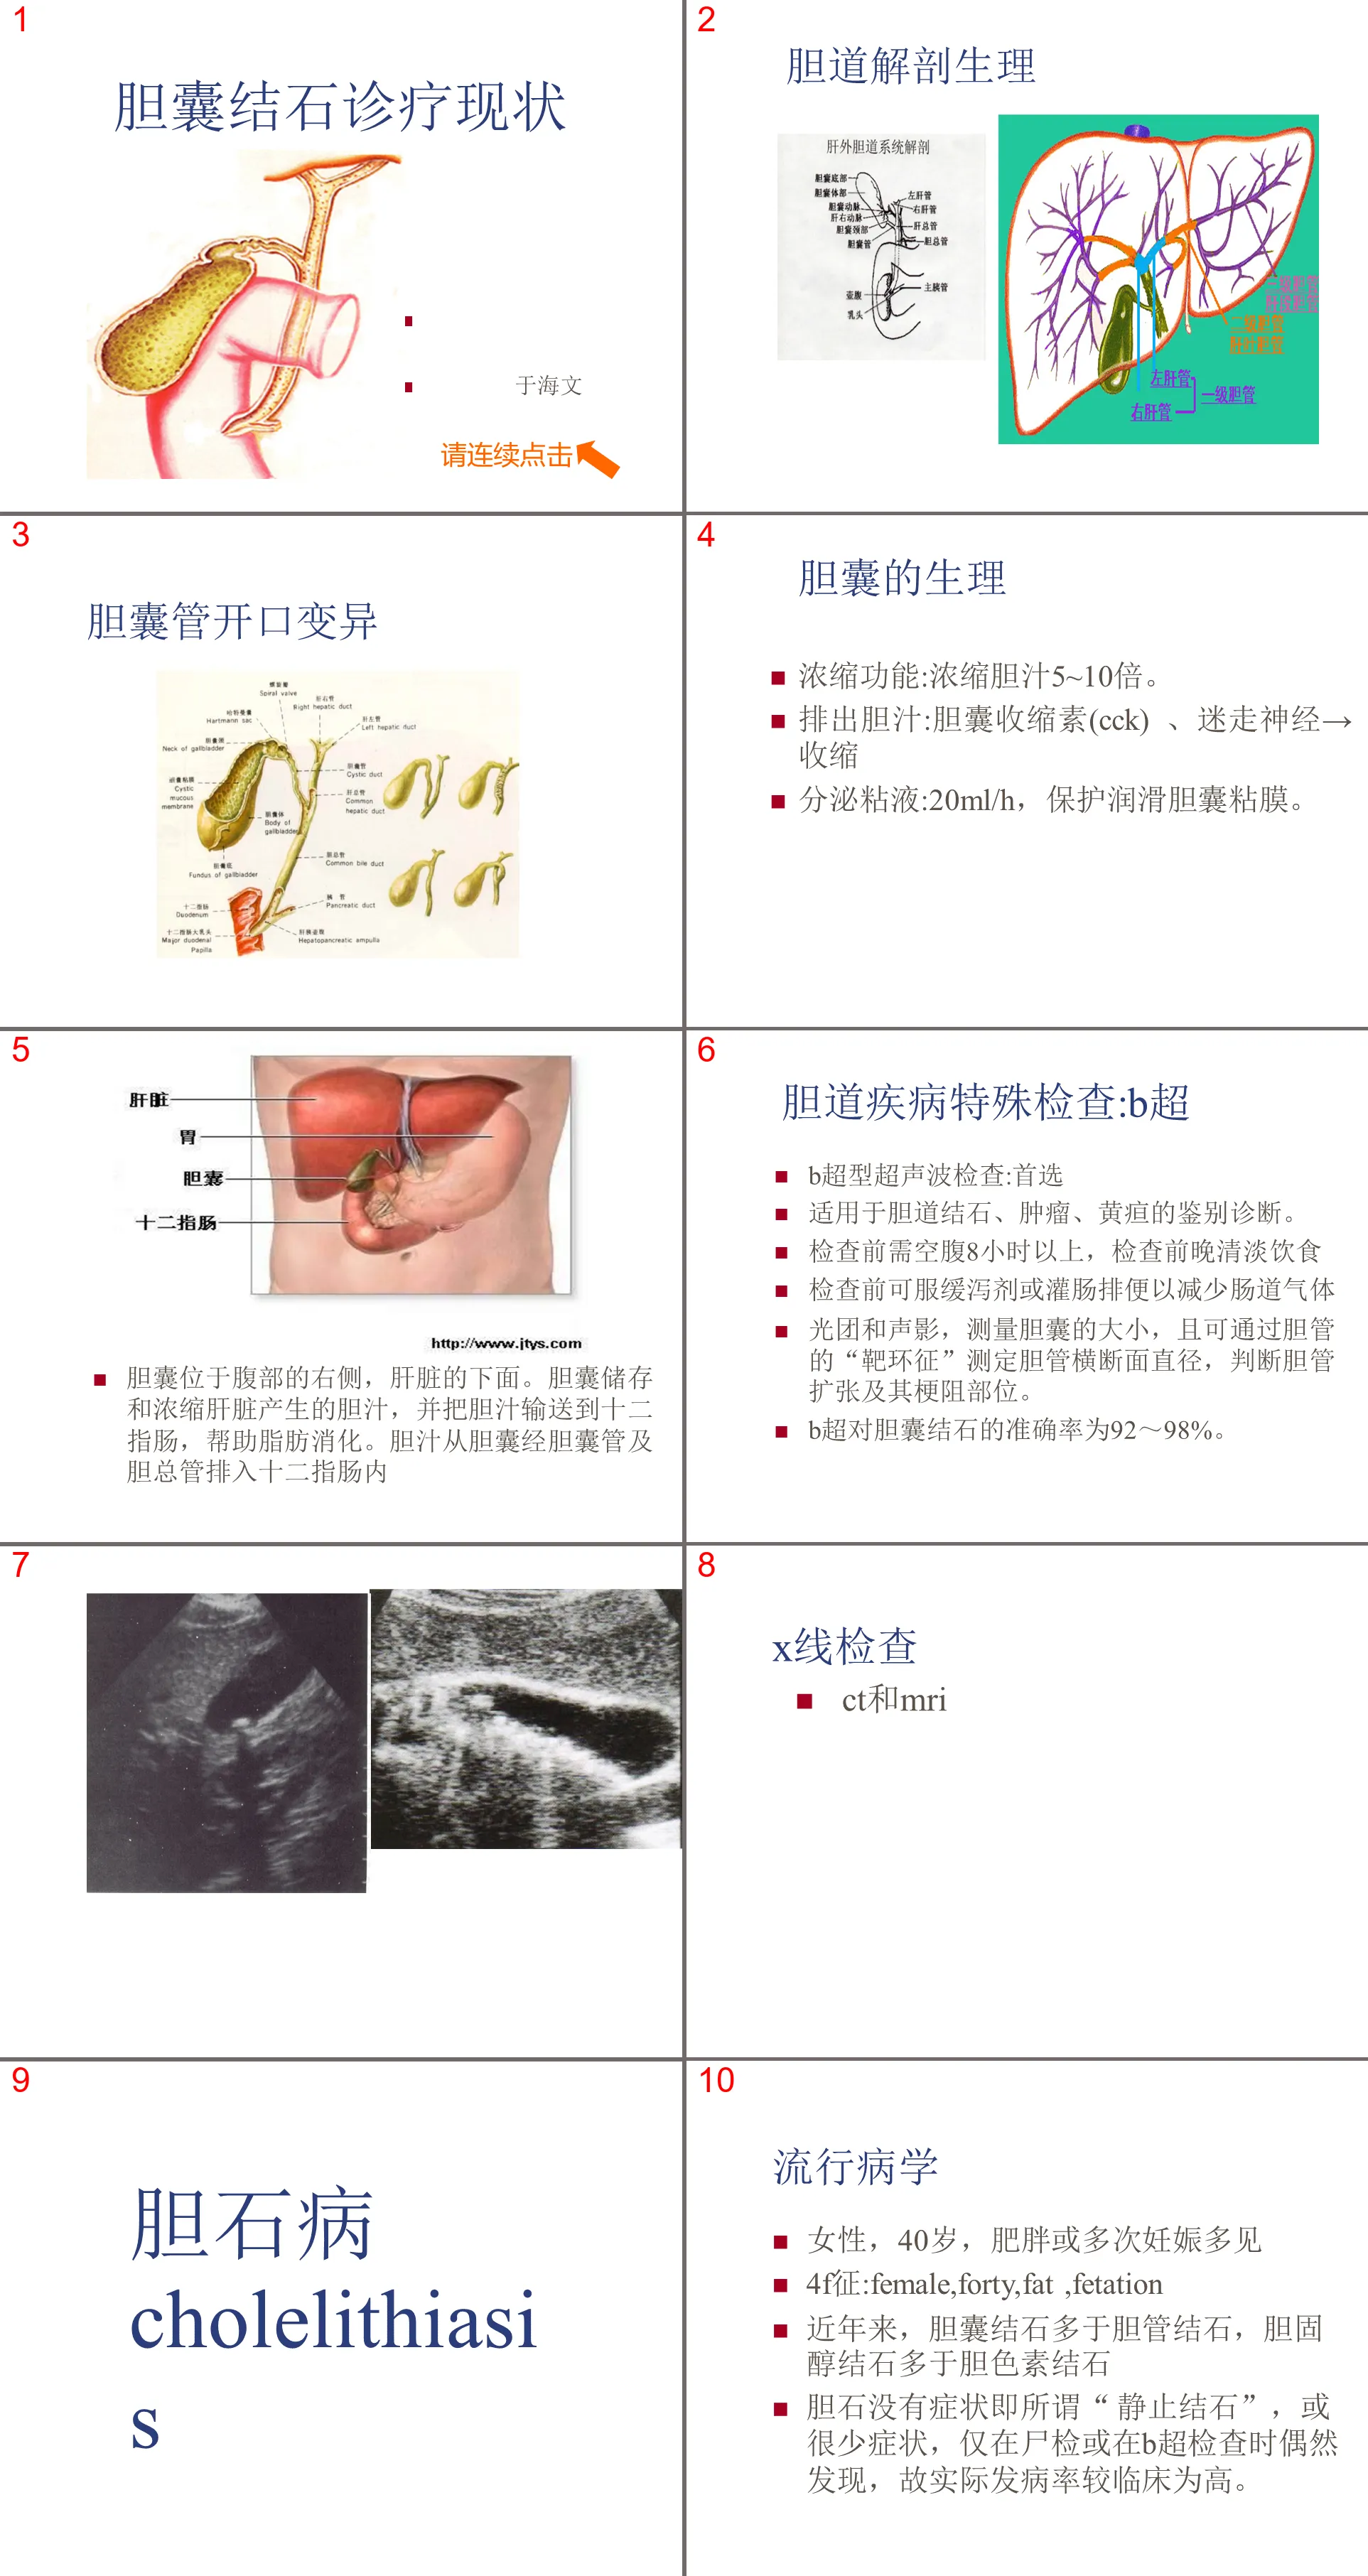 111外科-胆囊结石及其防治